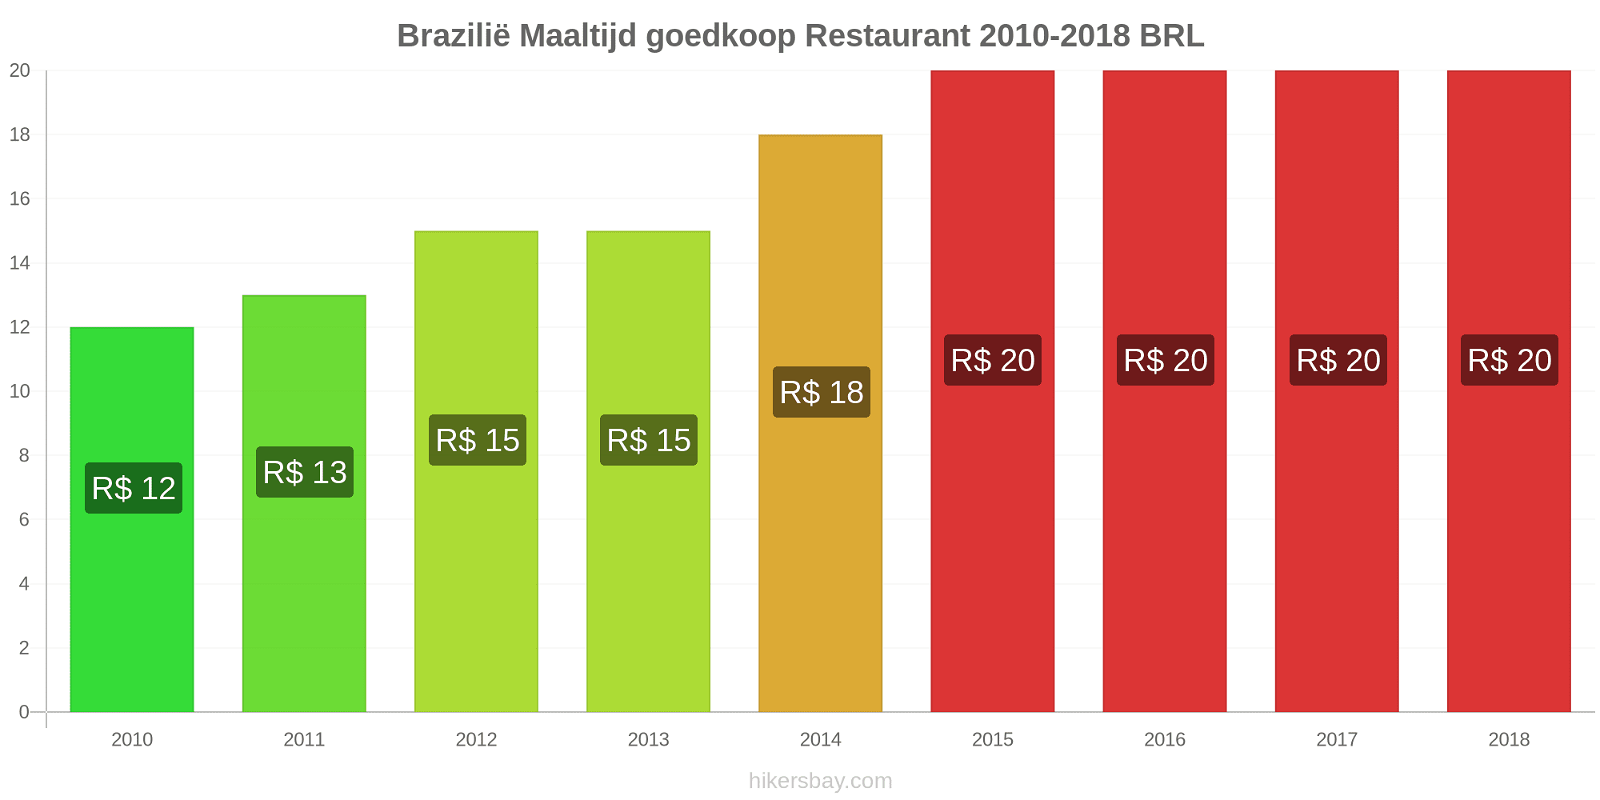 Brazilië prijswijzigingen Maaltijd in een goedkoop restaurant hikersbay.com